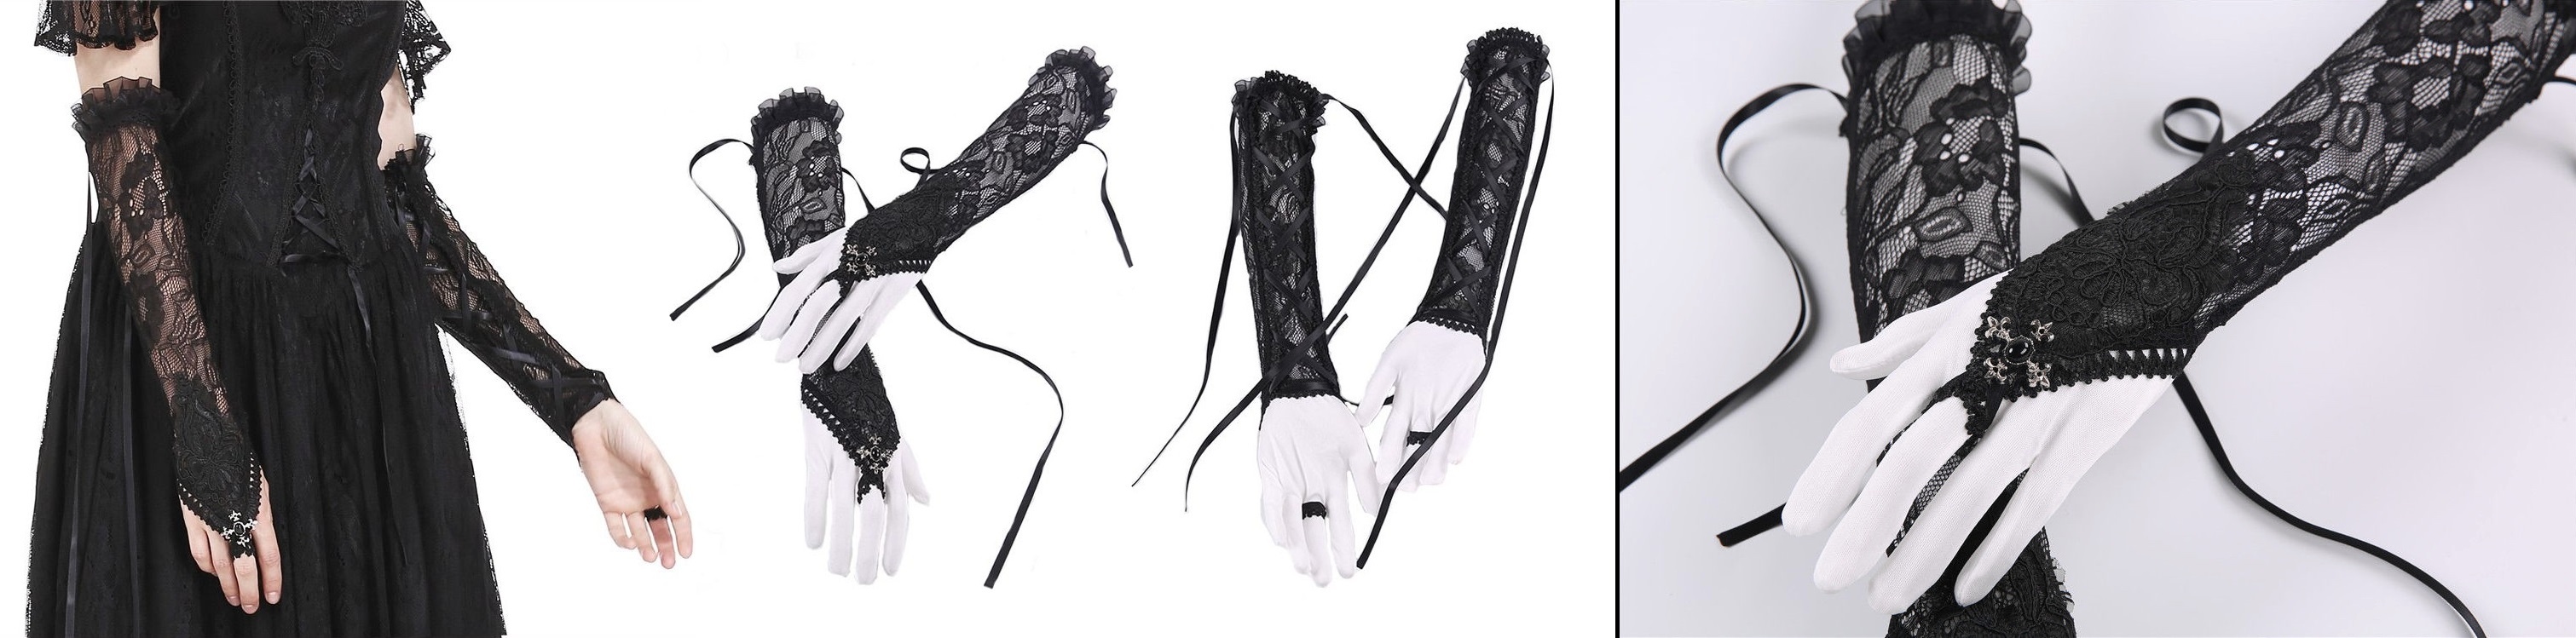 Gotické krajkové rukavice dlouhé s křížky